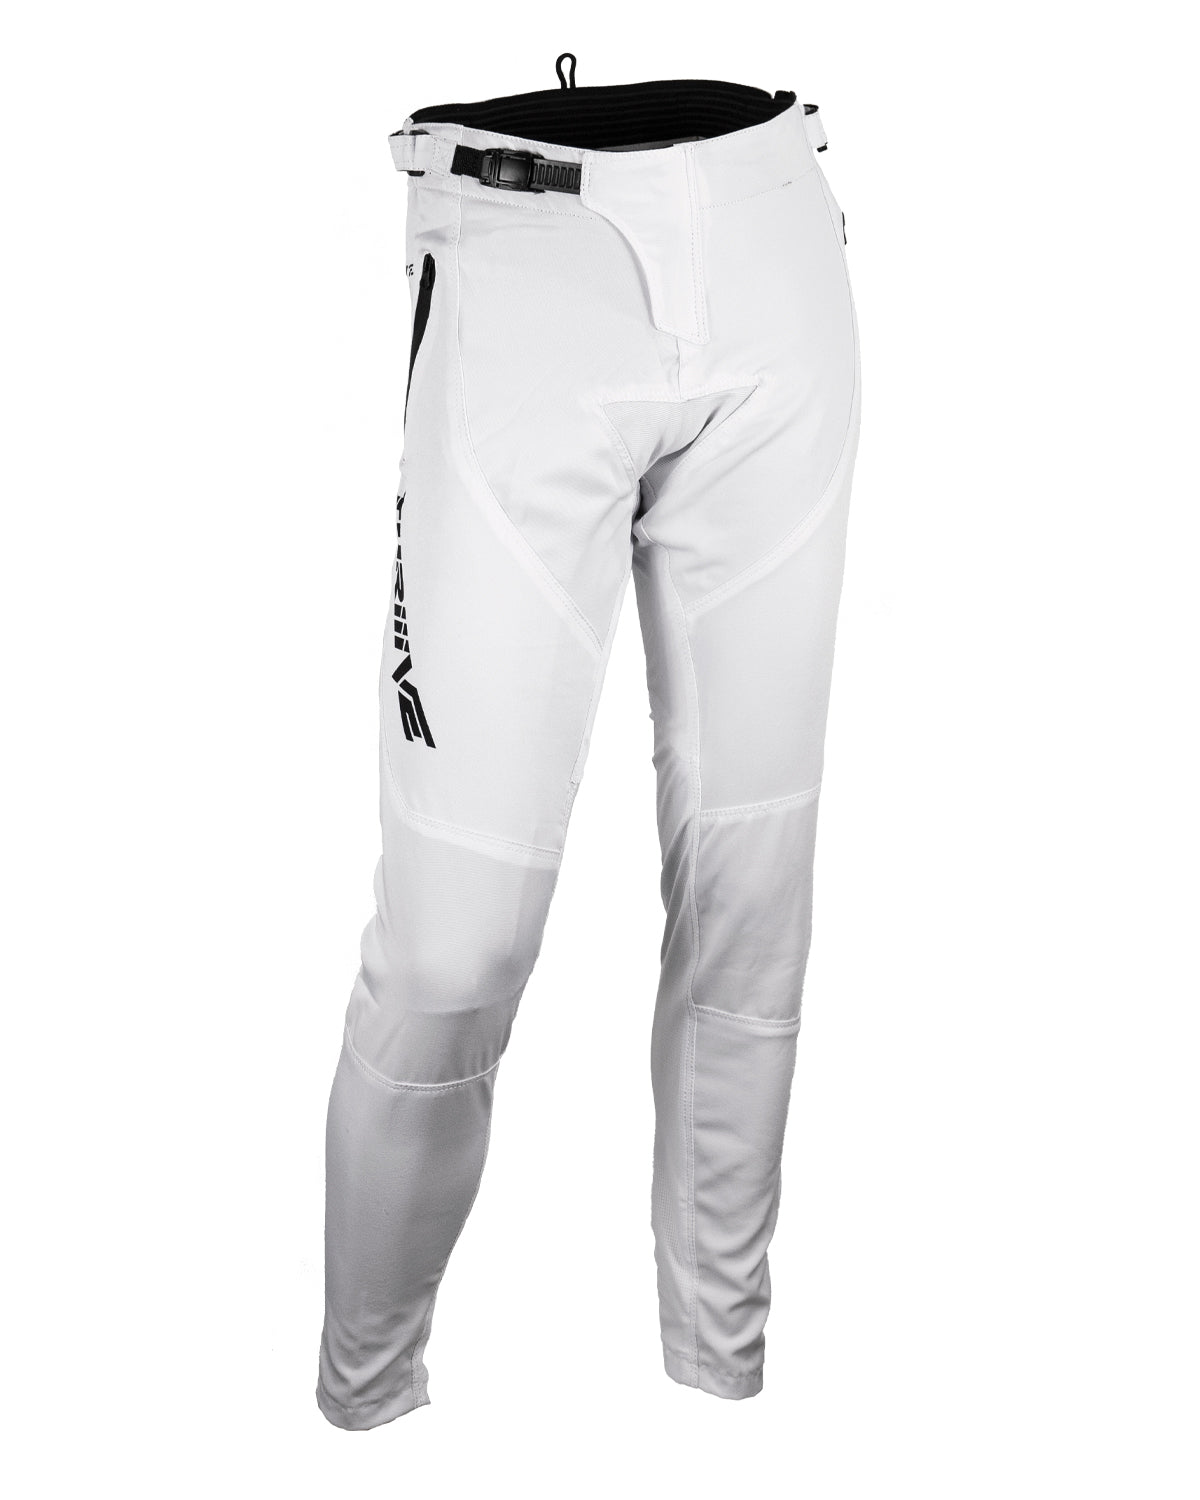 Elite Stretch Race Pants - White